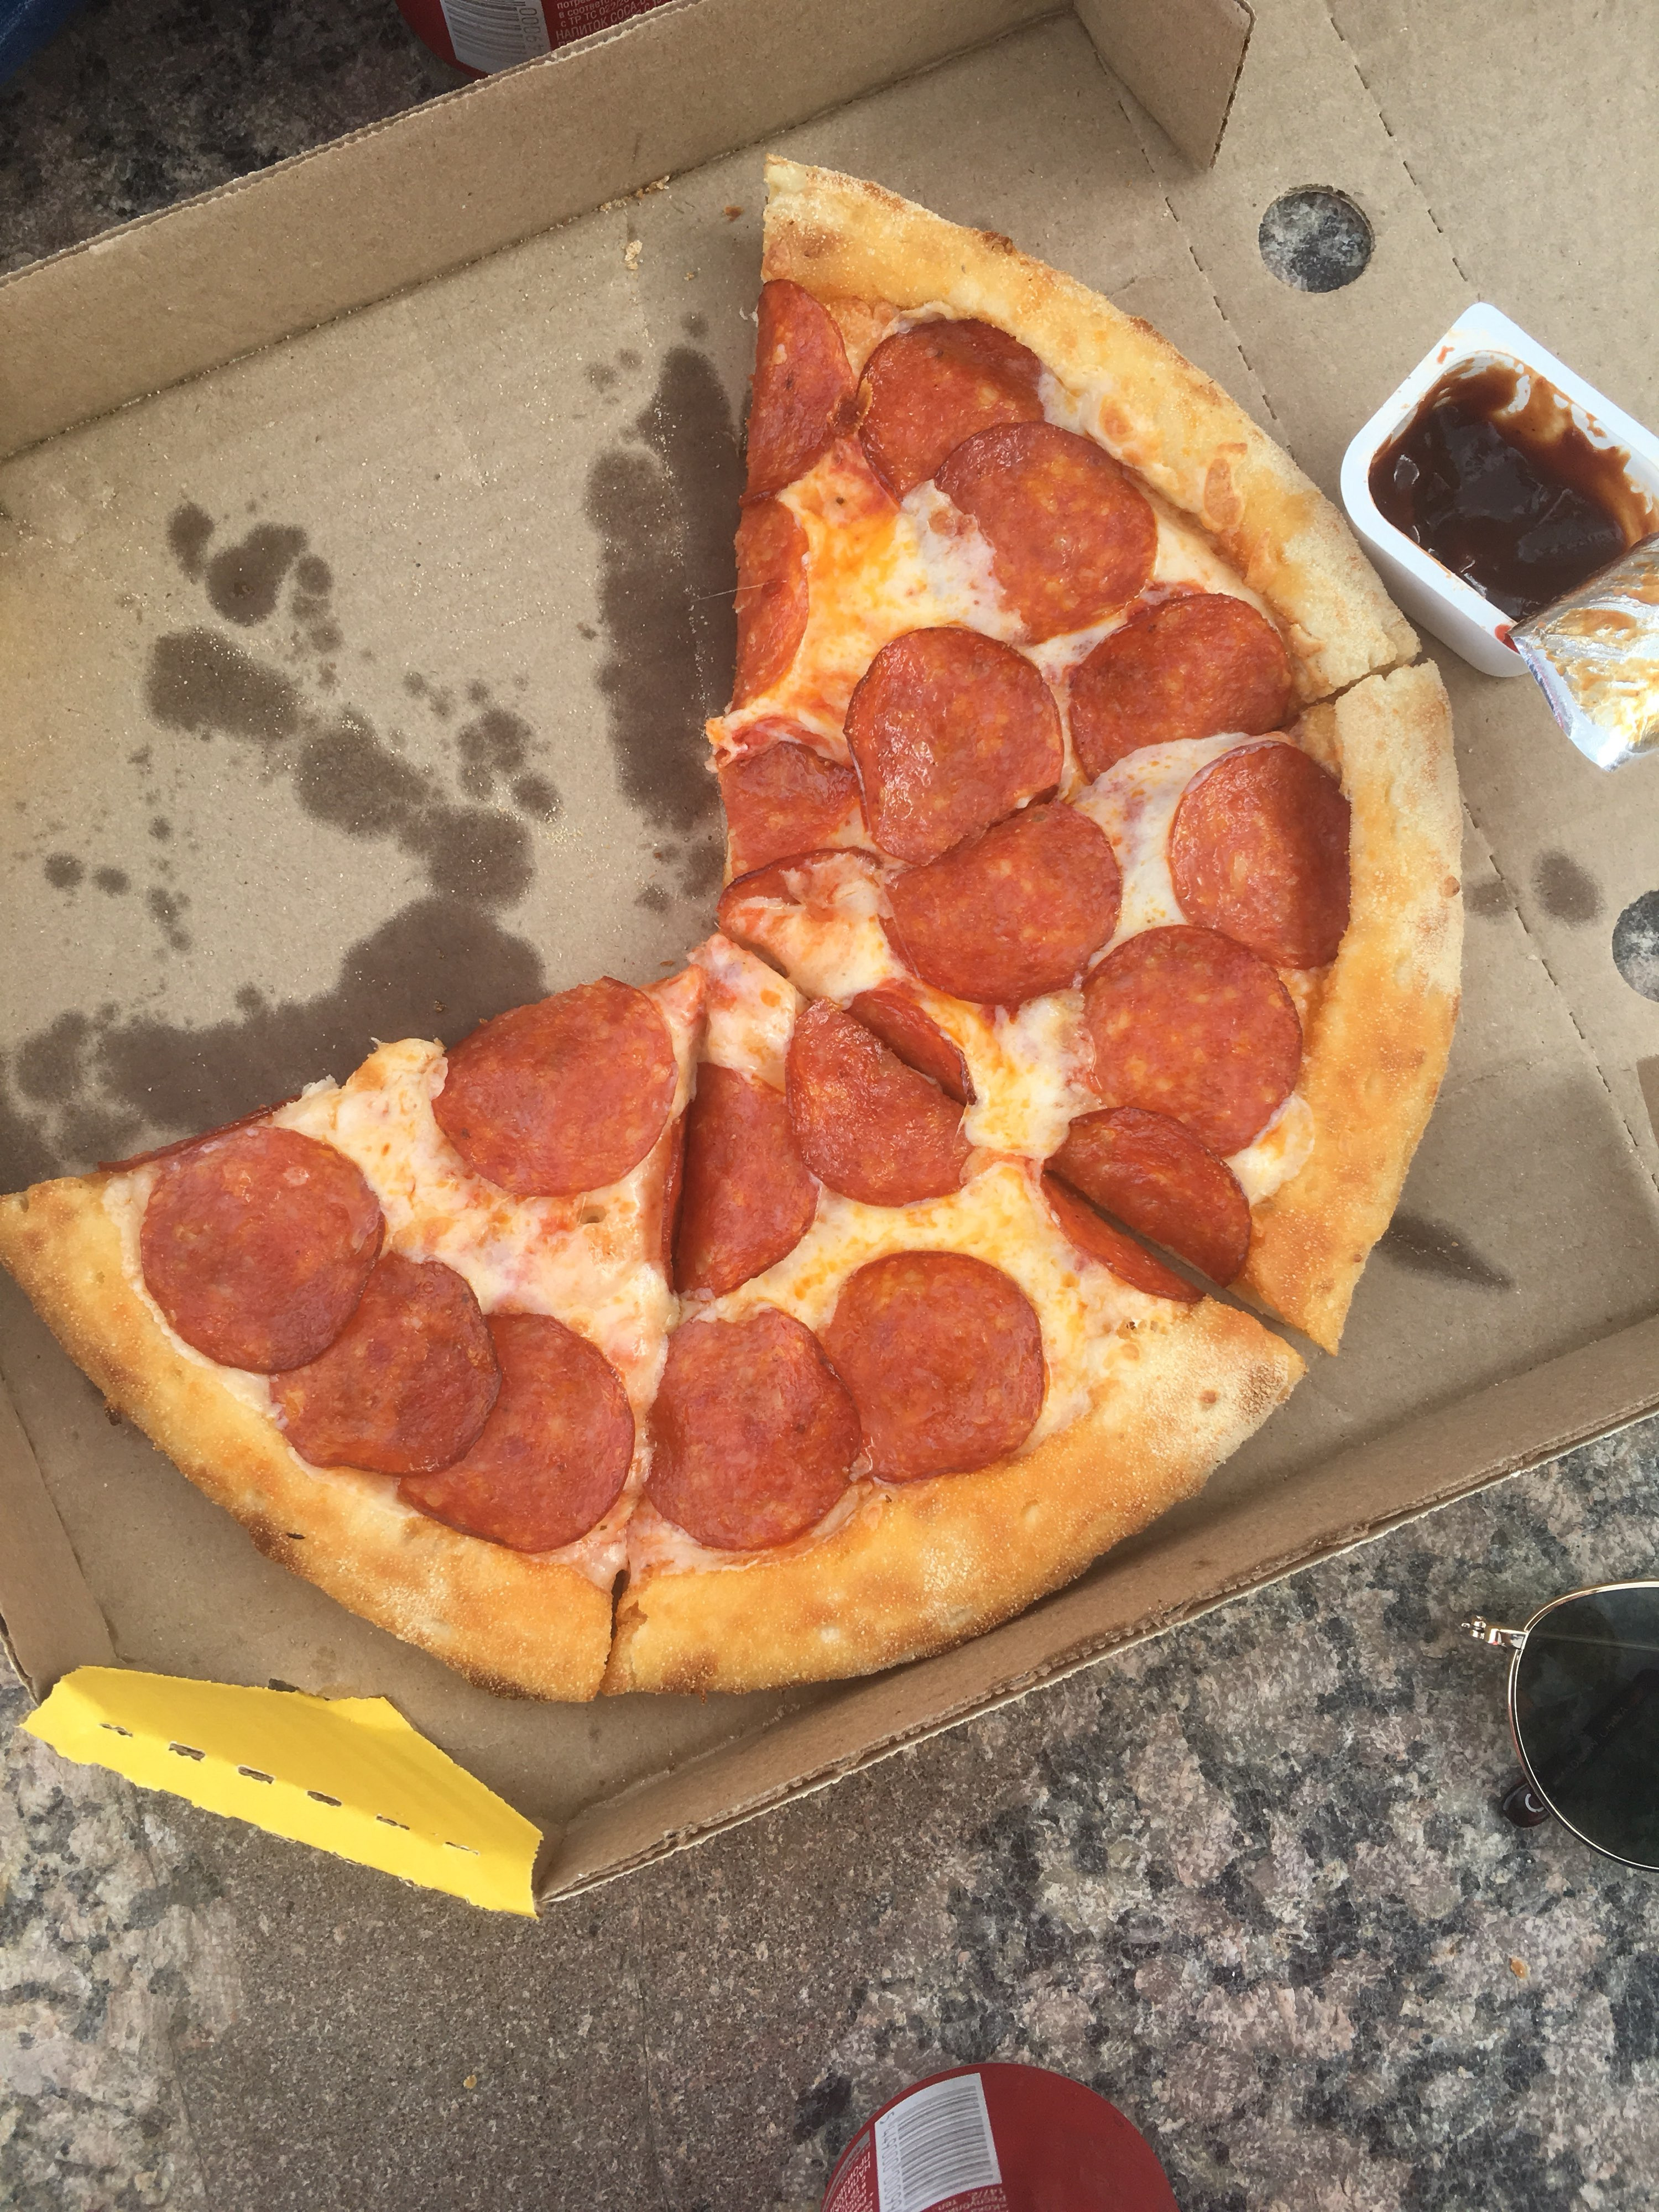 сколько стоит маленькая пицца пепперони в додо фото 95